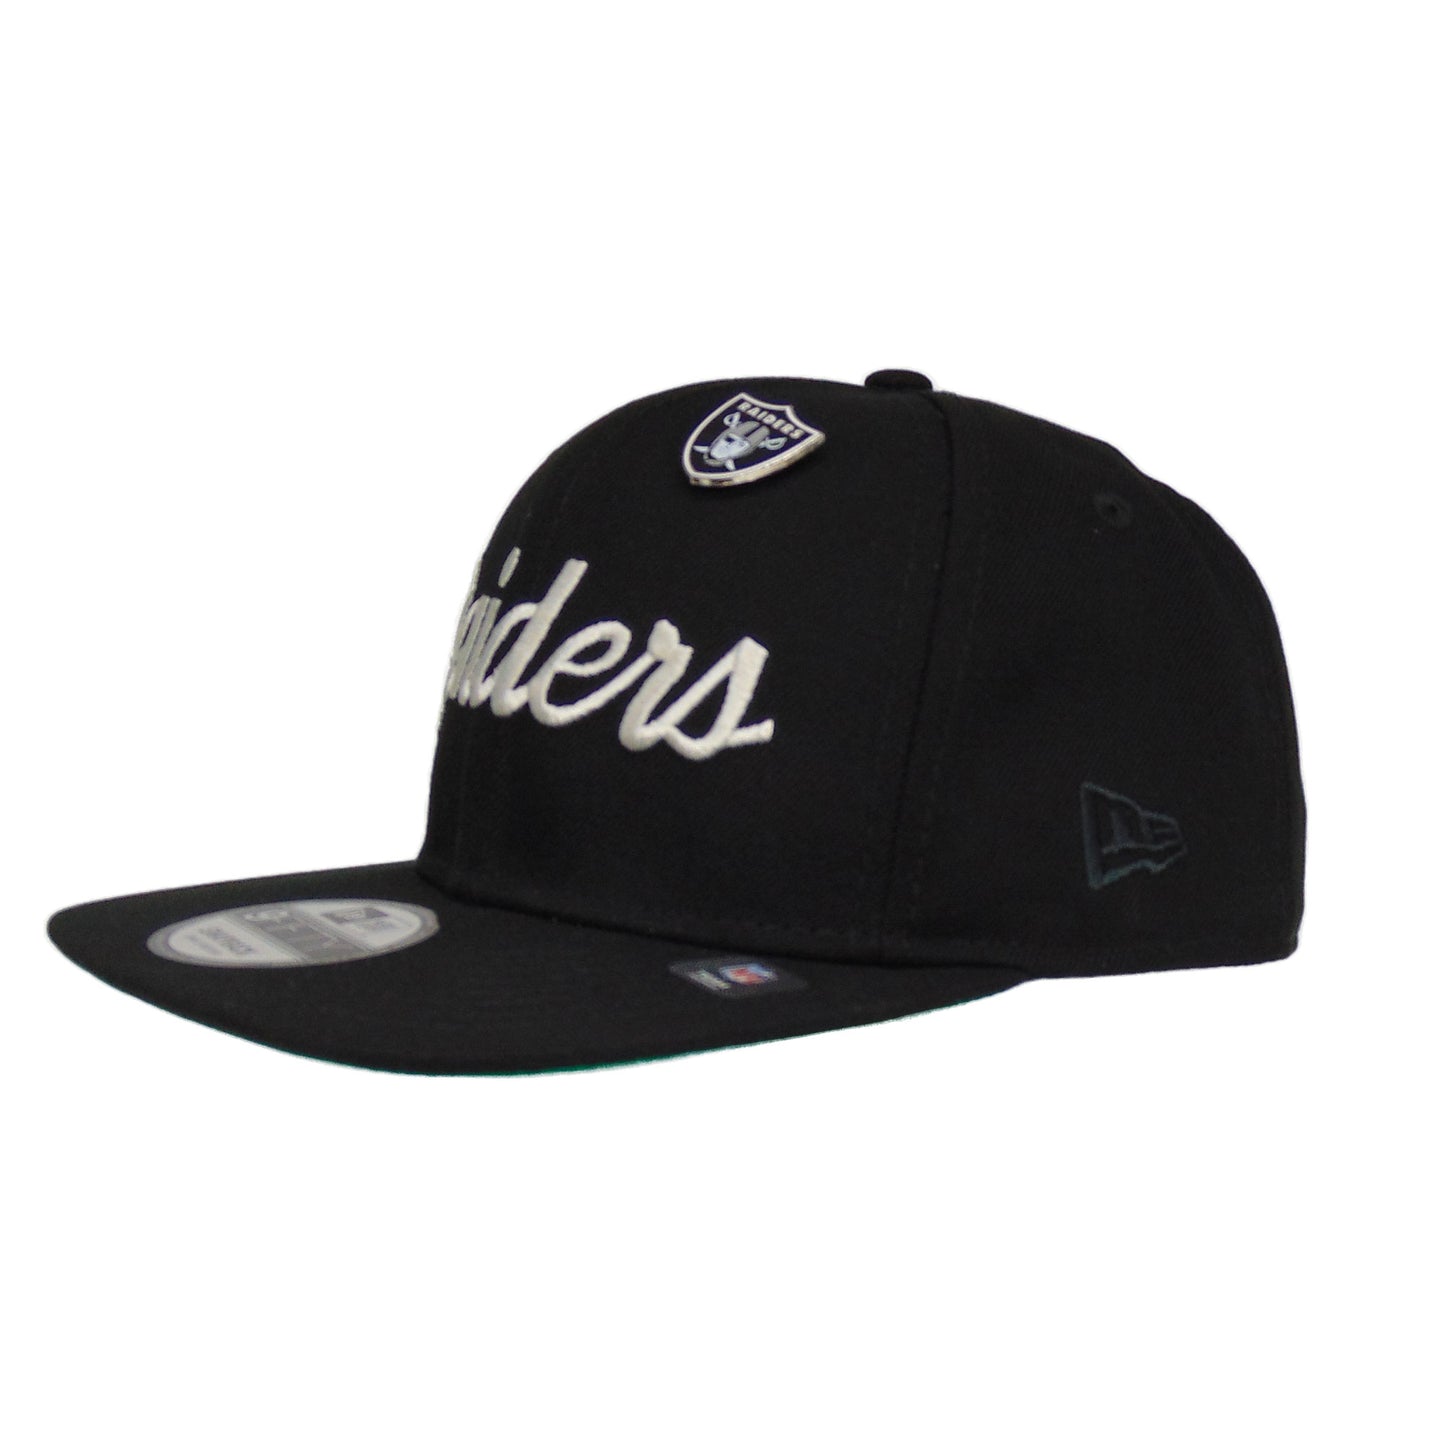 Raiders Jf Custom New Era Snapback Cap Pin black